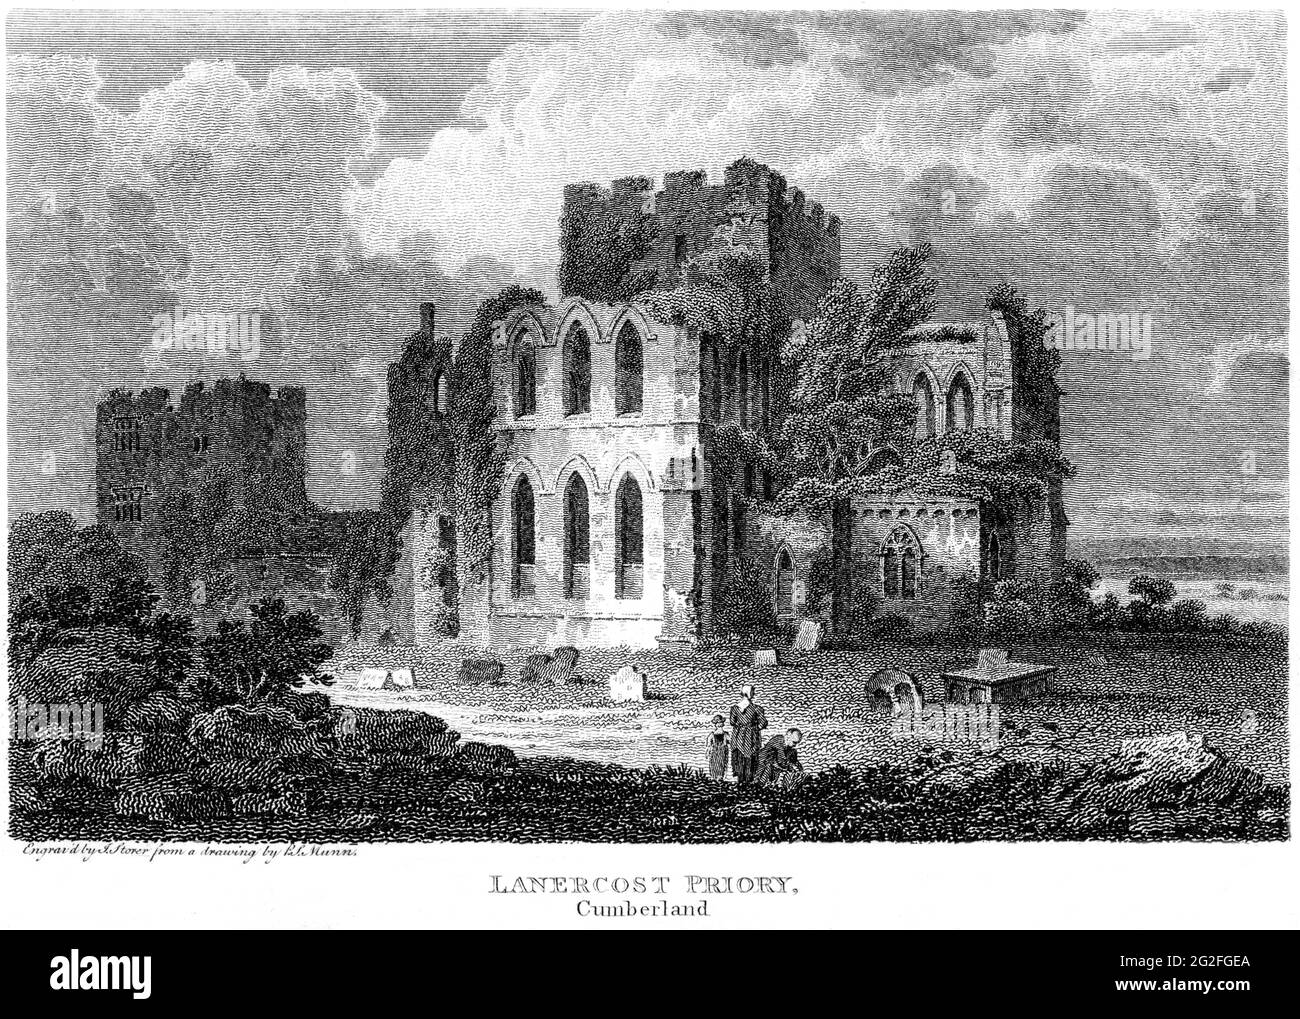 Ein Stich von Lanercost Priory, Cumberland, gescannt in hoher Auflösung aus einem Buch, das 1812 gedruckt wurde. Für urheberrechtlich frei gehalten. Stockfoto